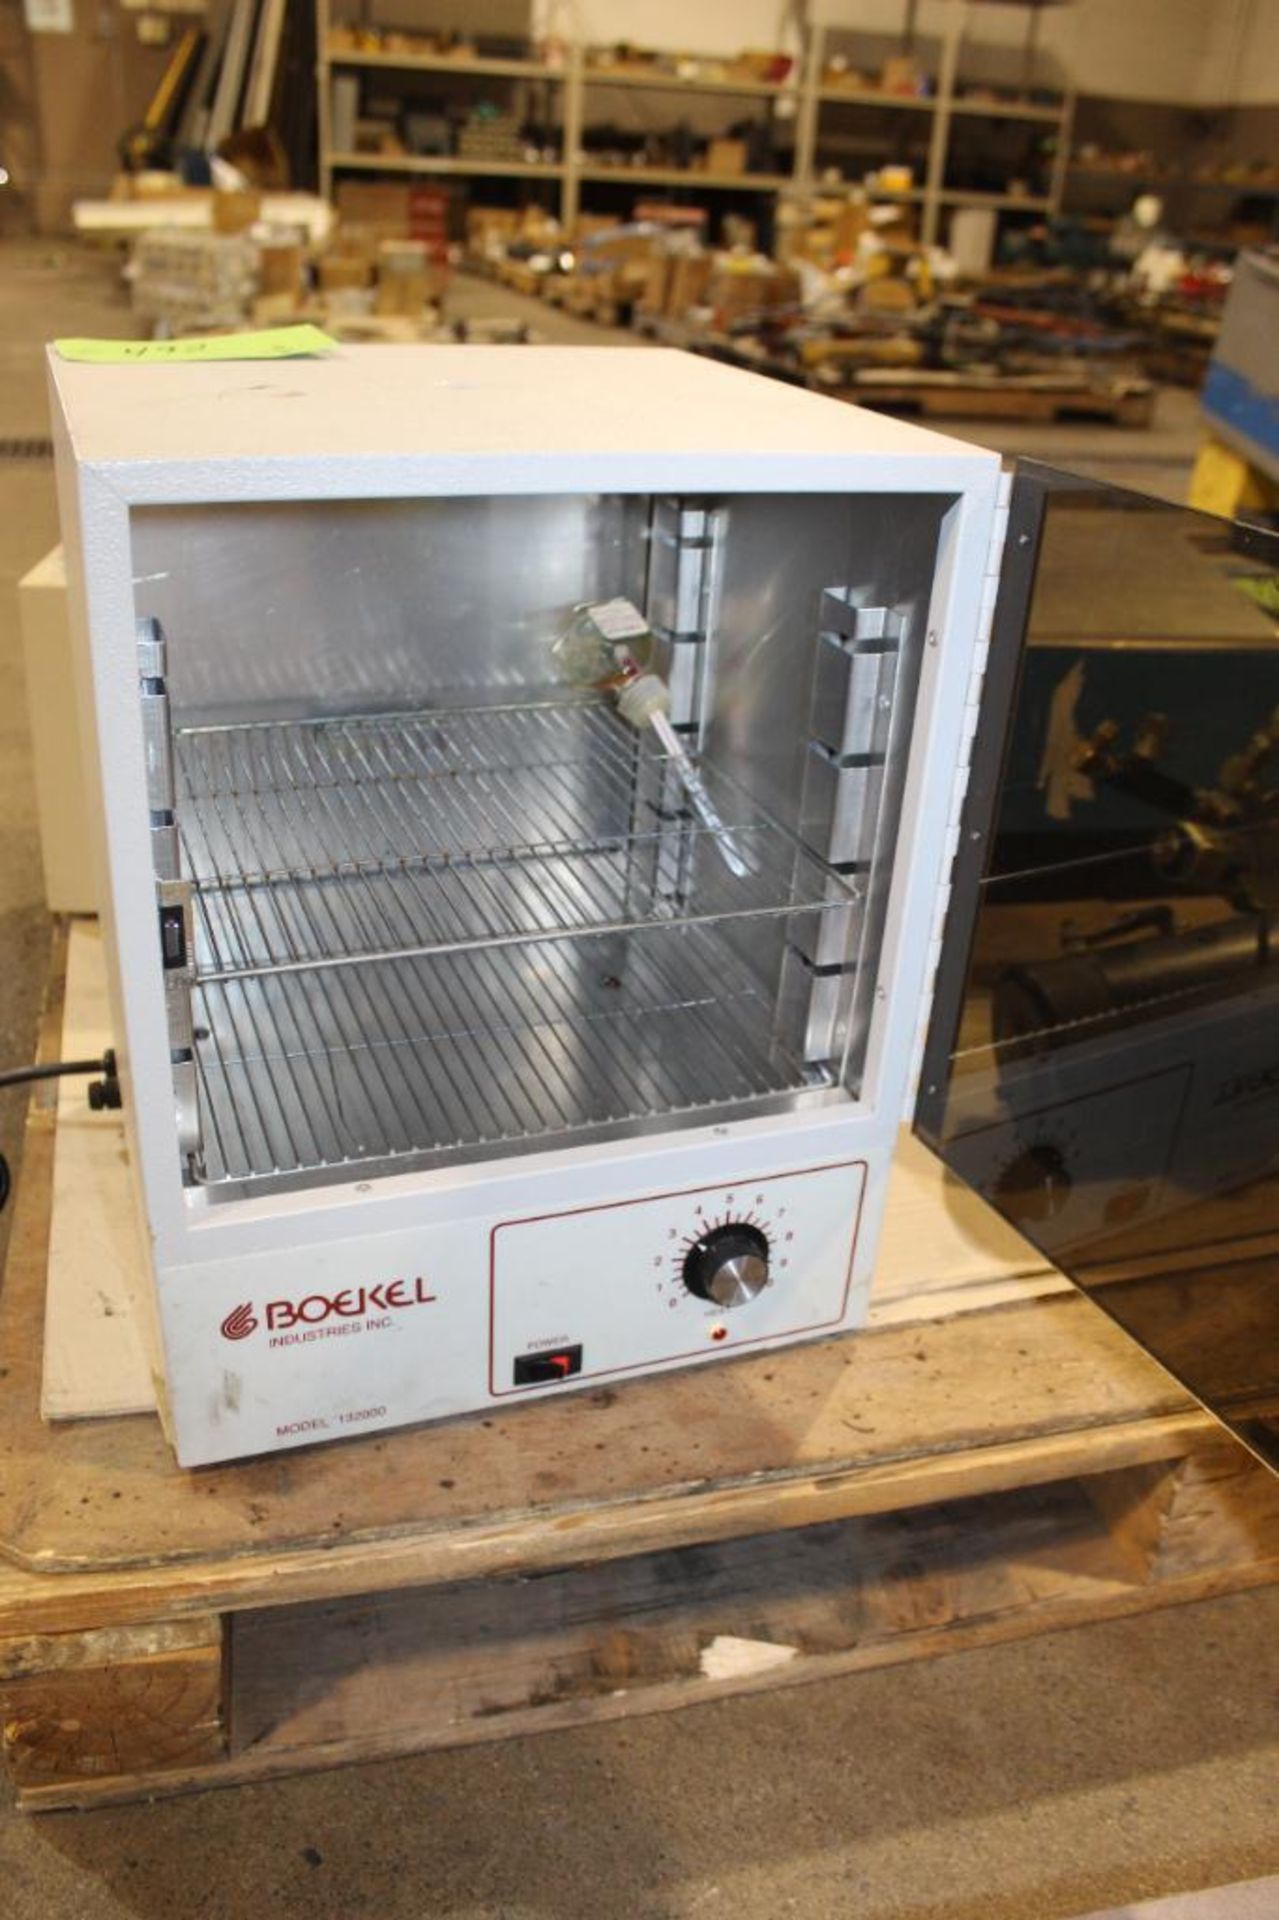 Boekel Oven Model 132000 - Image 3 of 6